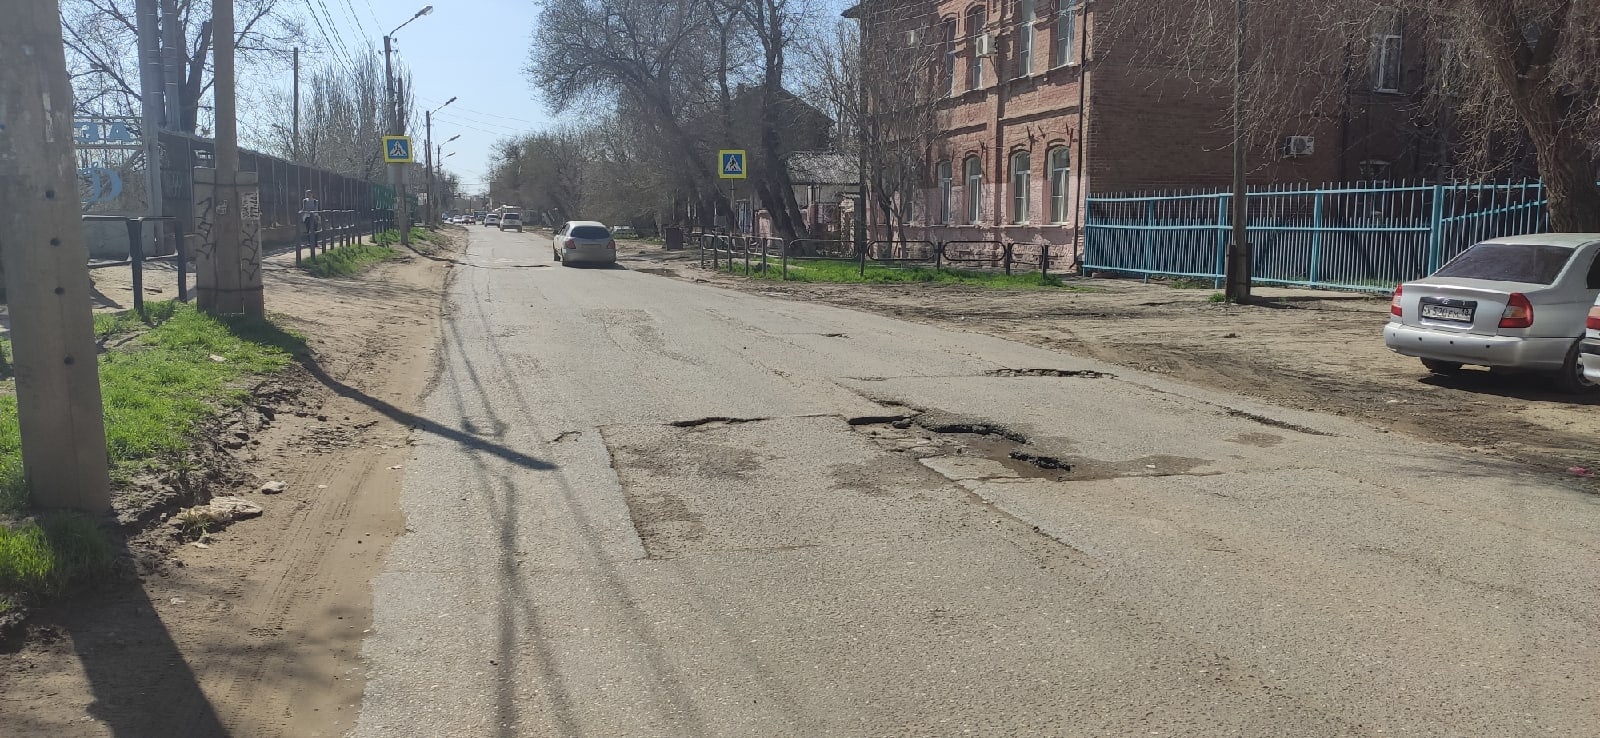 Астраханцев просят привлечь внимание администрации к очередной дорожной проблеме